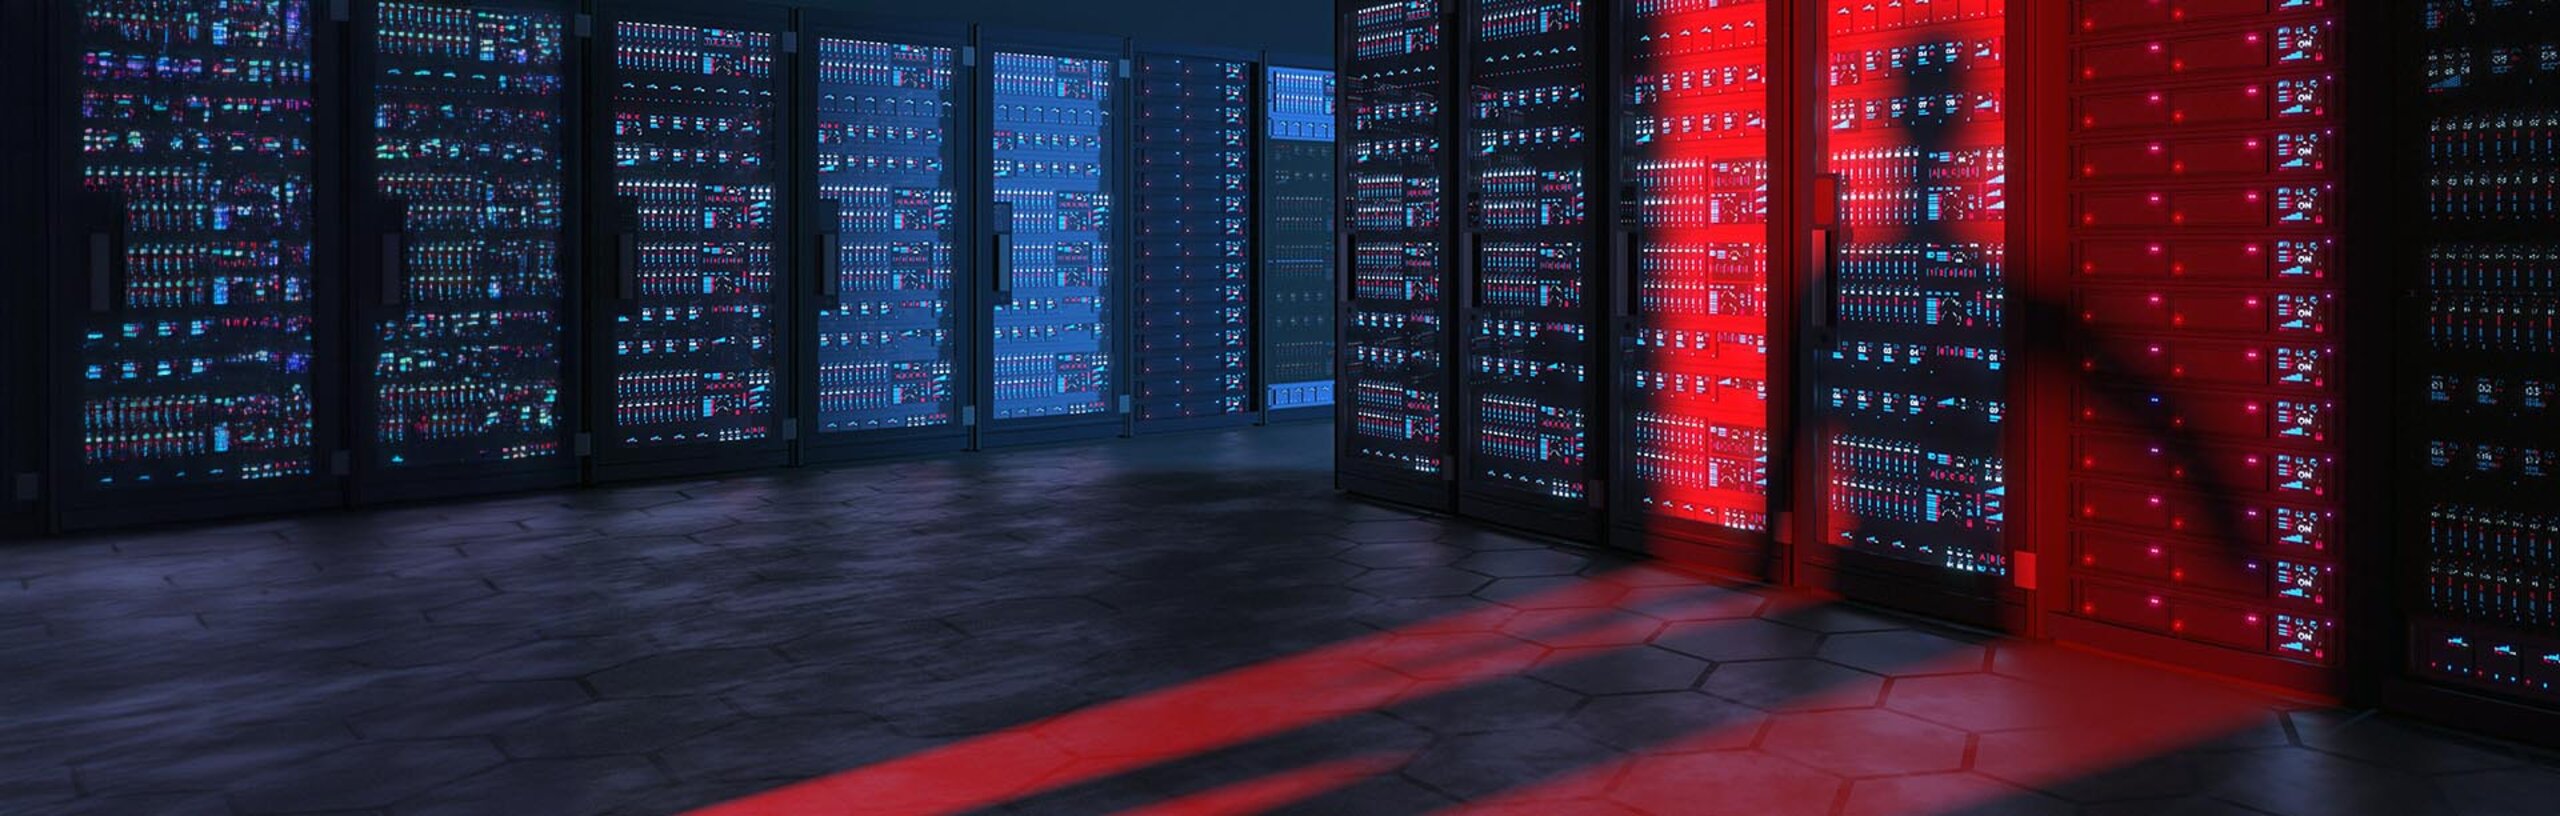 Ein Serverraum, in dem ein Schatten einer Person auf rot beleuchtete Server fällt